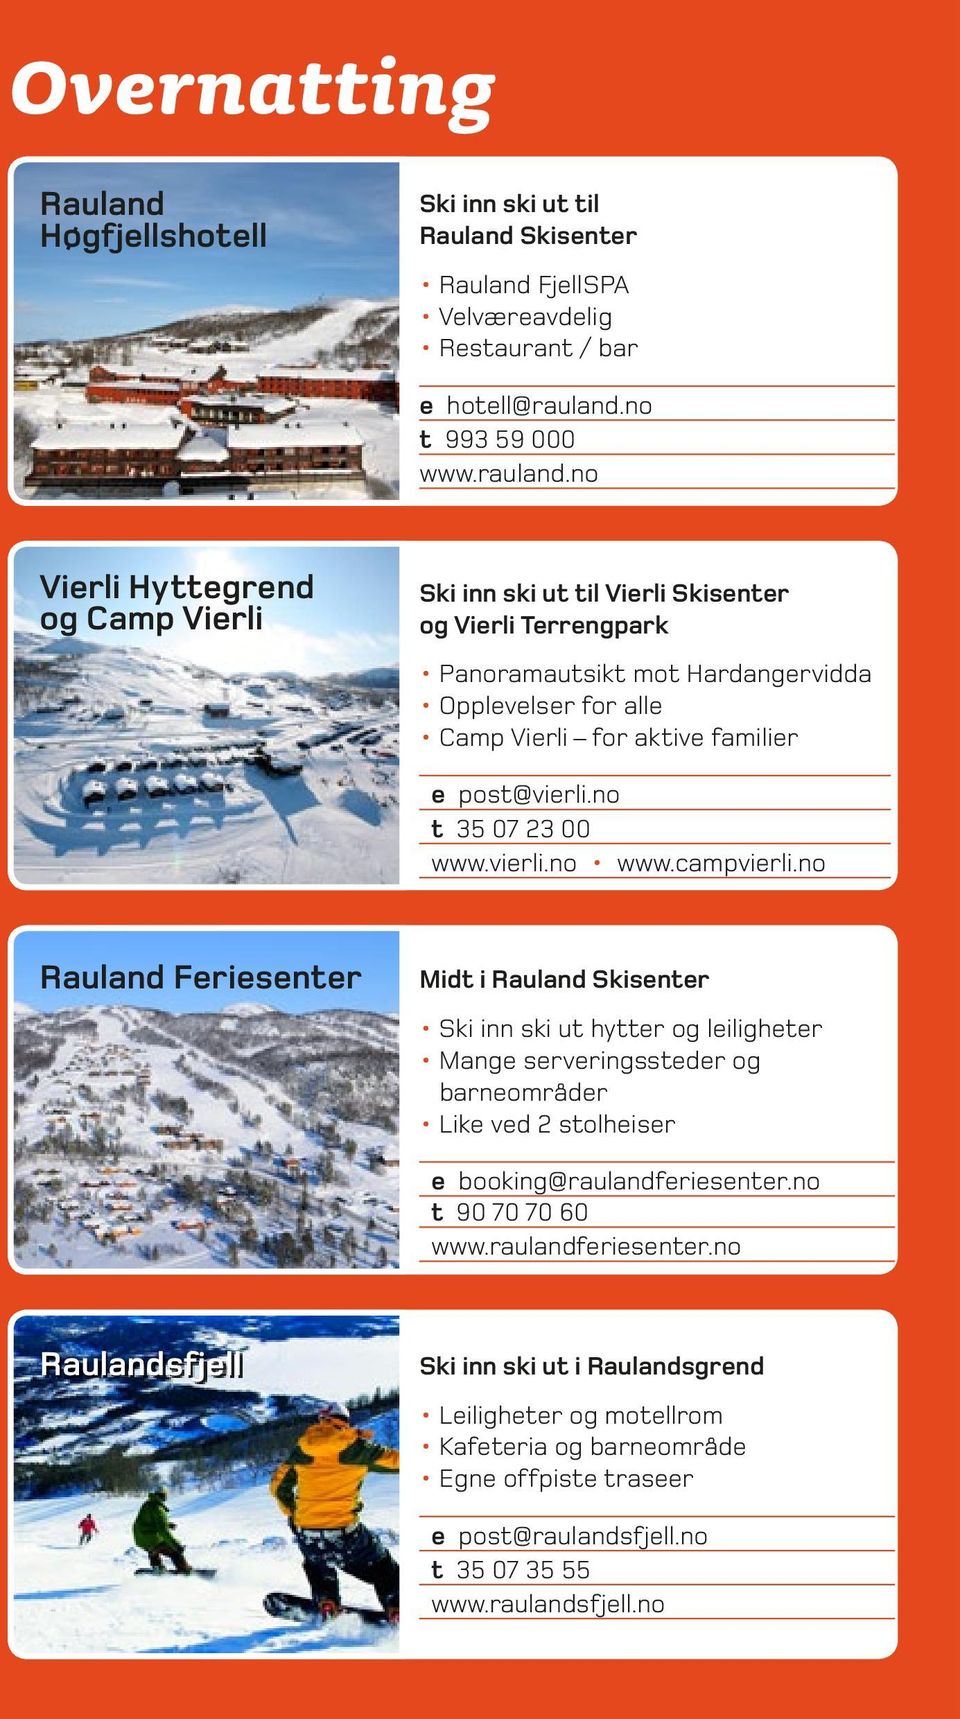 no Vierli Hyttegrend og Camp Vierli Ski inn ski ut til Vierli Skisenter og Vierli Terrengpark Panoramautsikt mot Hardangervidda Opplevelser for alle Camp Vierli for aktive familier e post@vierli.